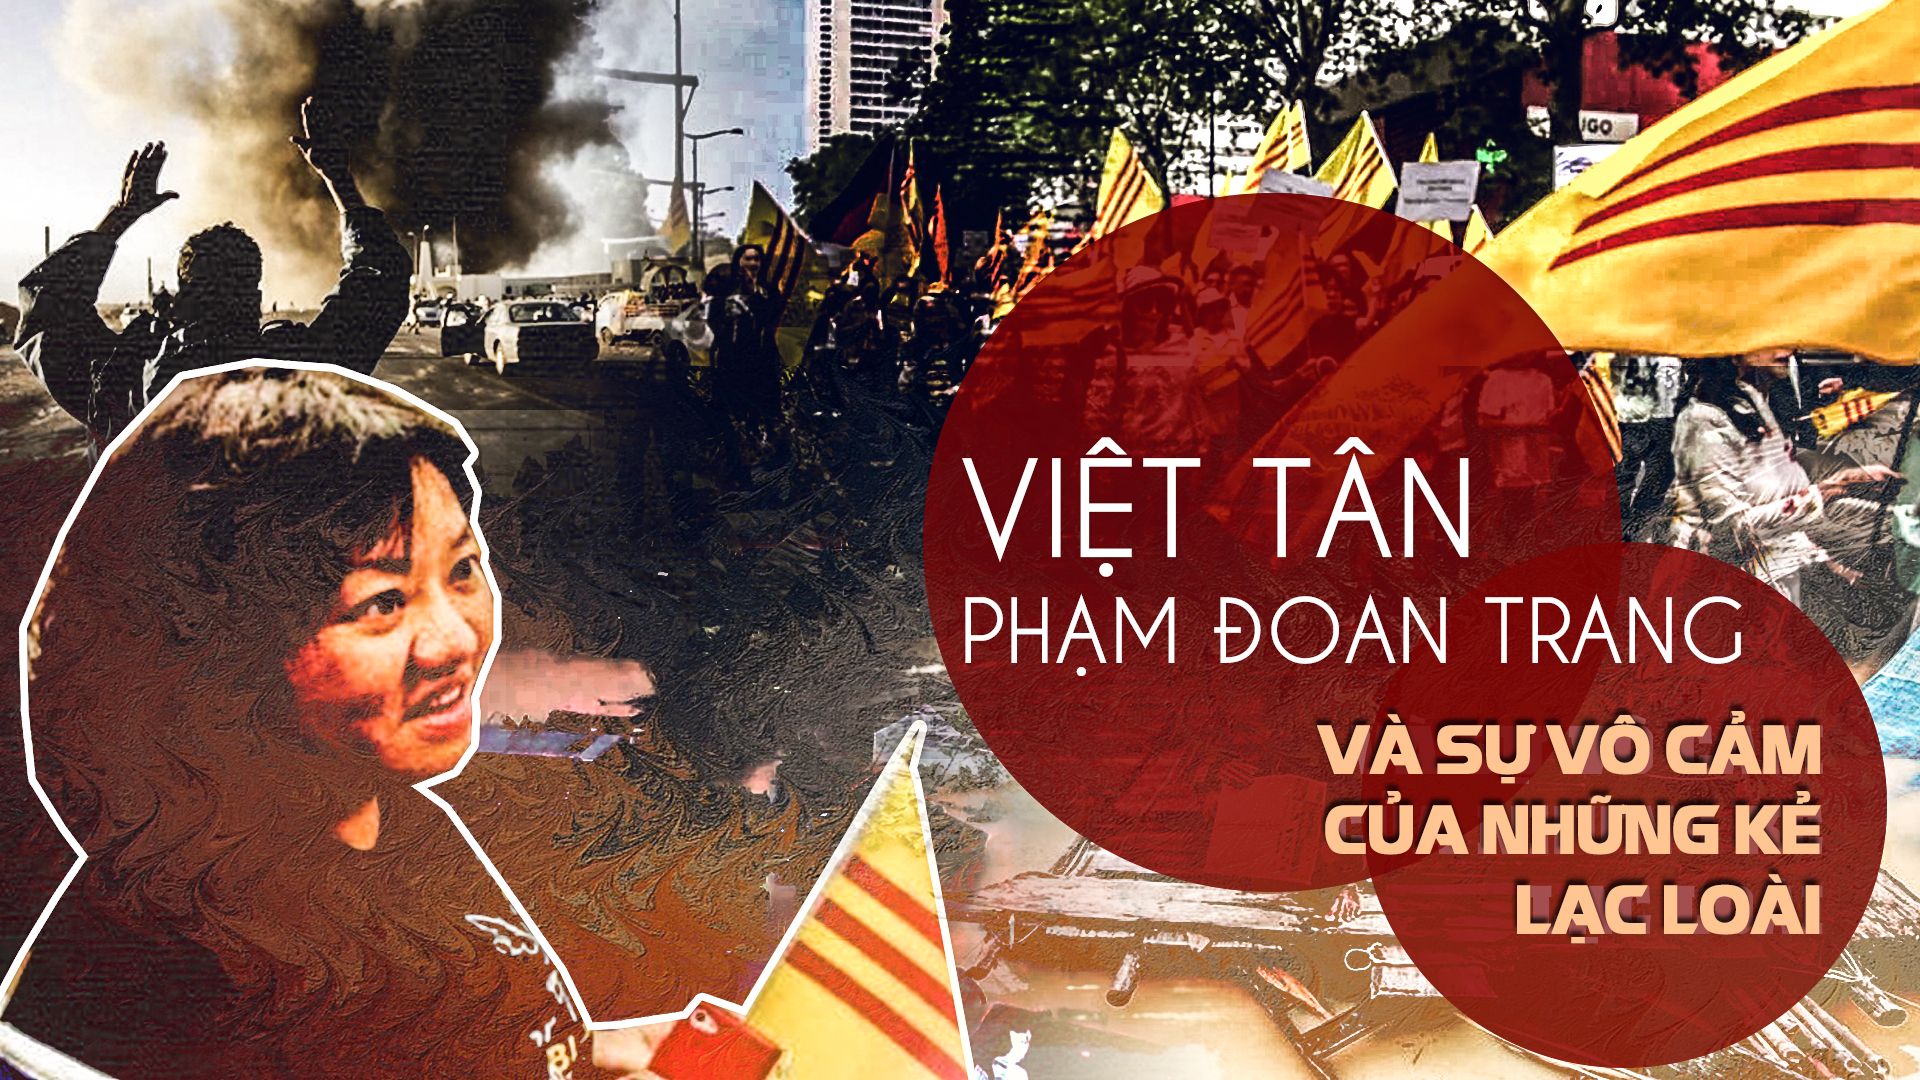 Việt Tân, Phạm Đoan Trang và sự vô cảm của những kẻ lạc loài